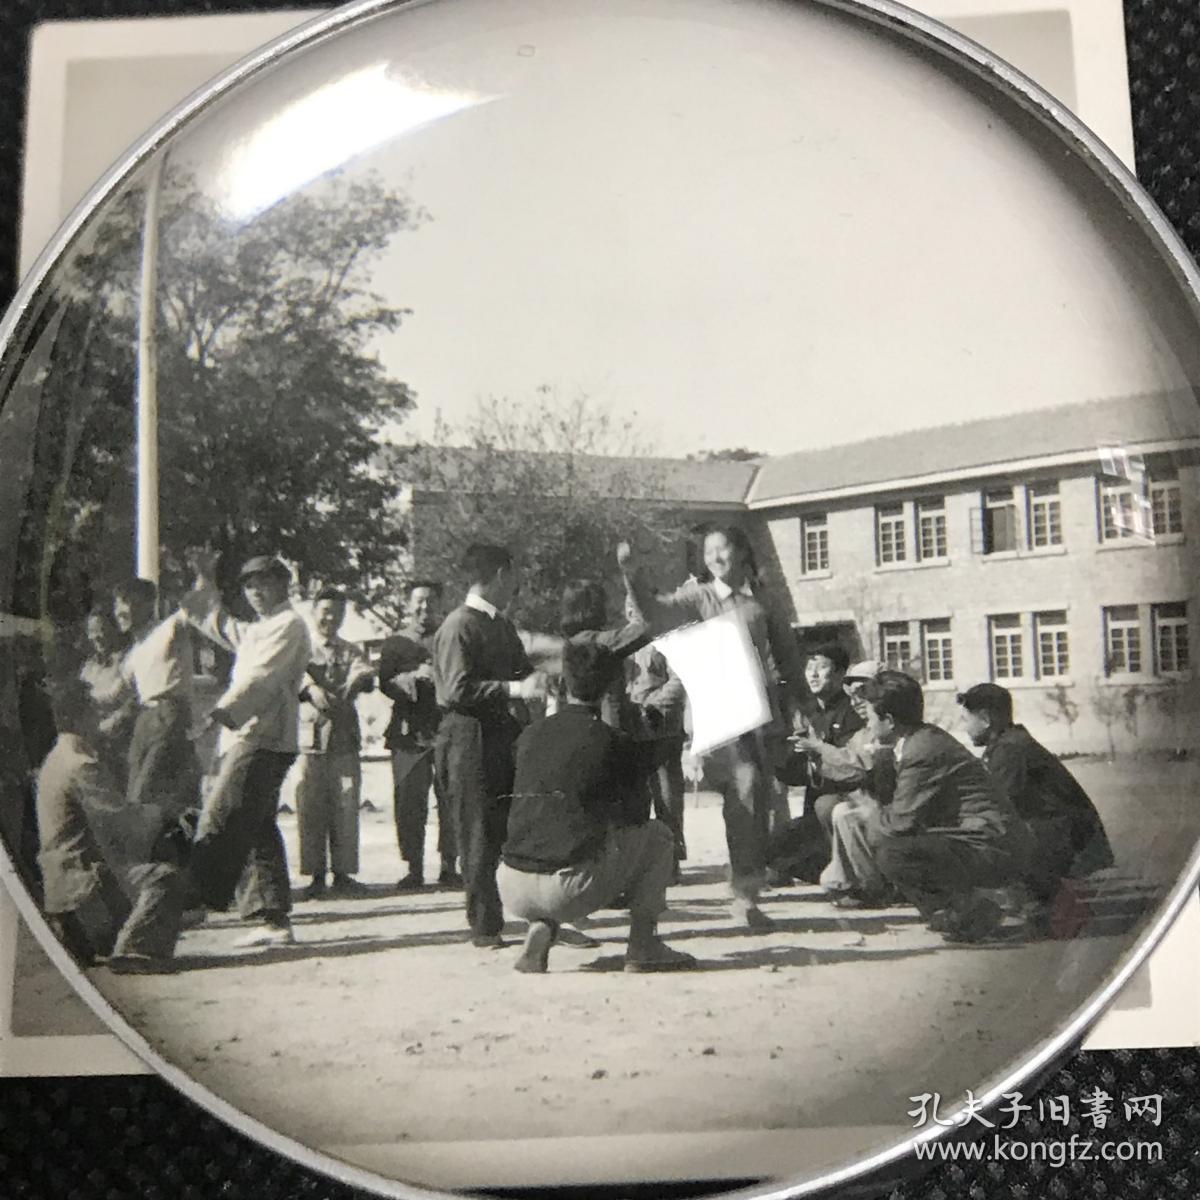 【系列照片】早期1952年北京医士学校众人留影及校园内场景4张合售，分别为学校大门、操场及教室内化学实验等场景，背面写有注释。北京市医士学校成立于1950年，几年后并入北京市卫生学校，存在时间短暂(详见描述)。老照片内容少见，颇为难得